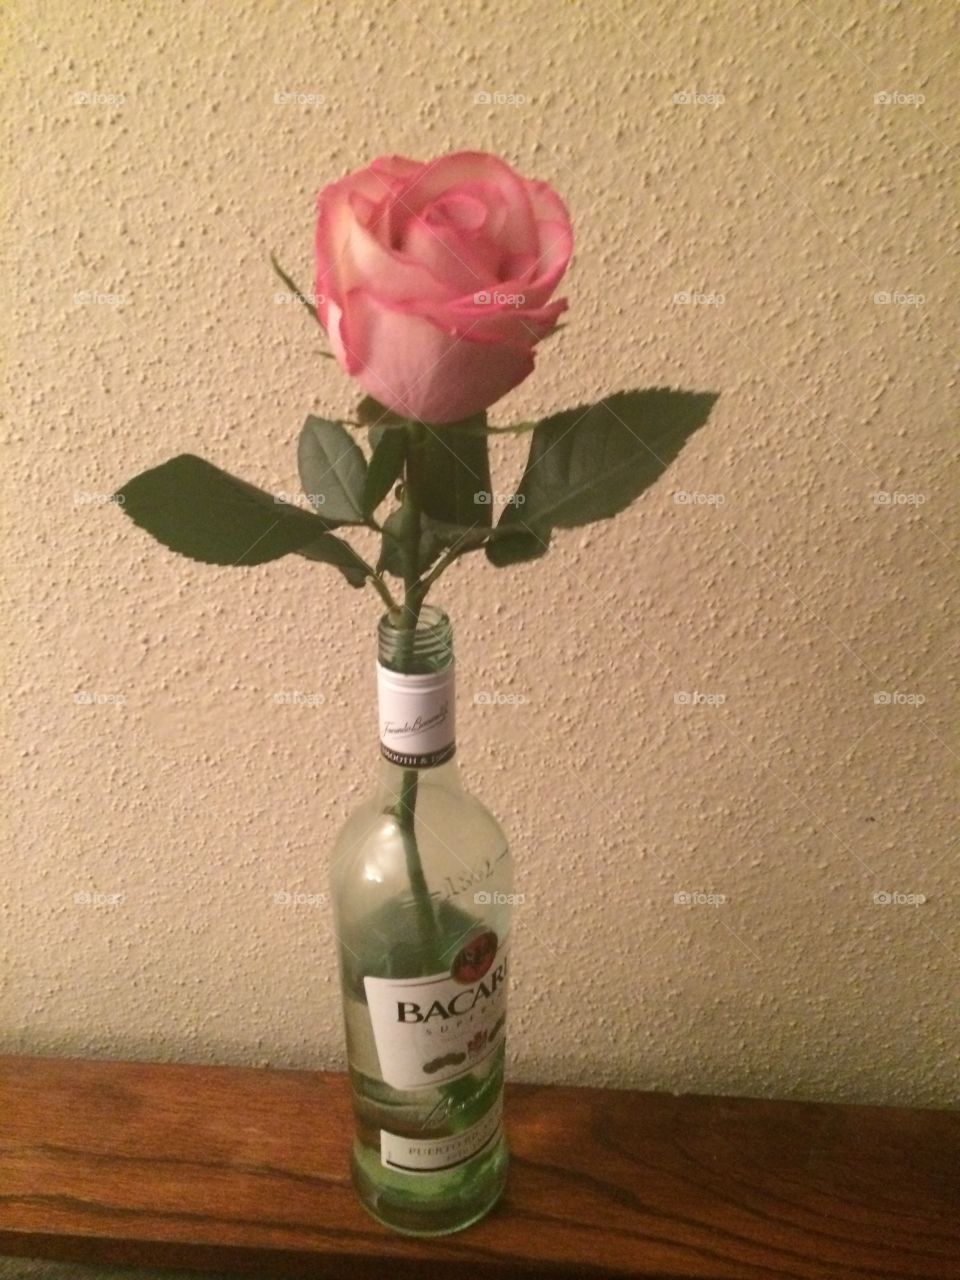 Lone rose. Rose in a rum bottle